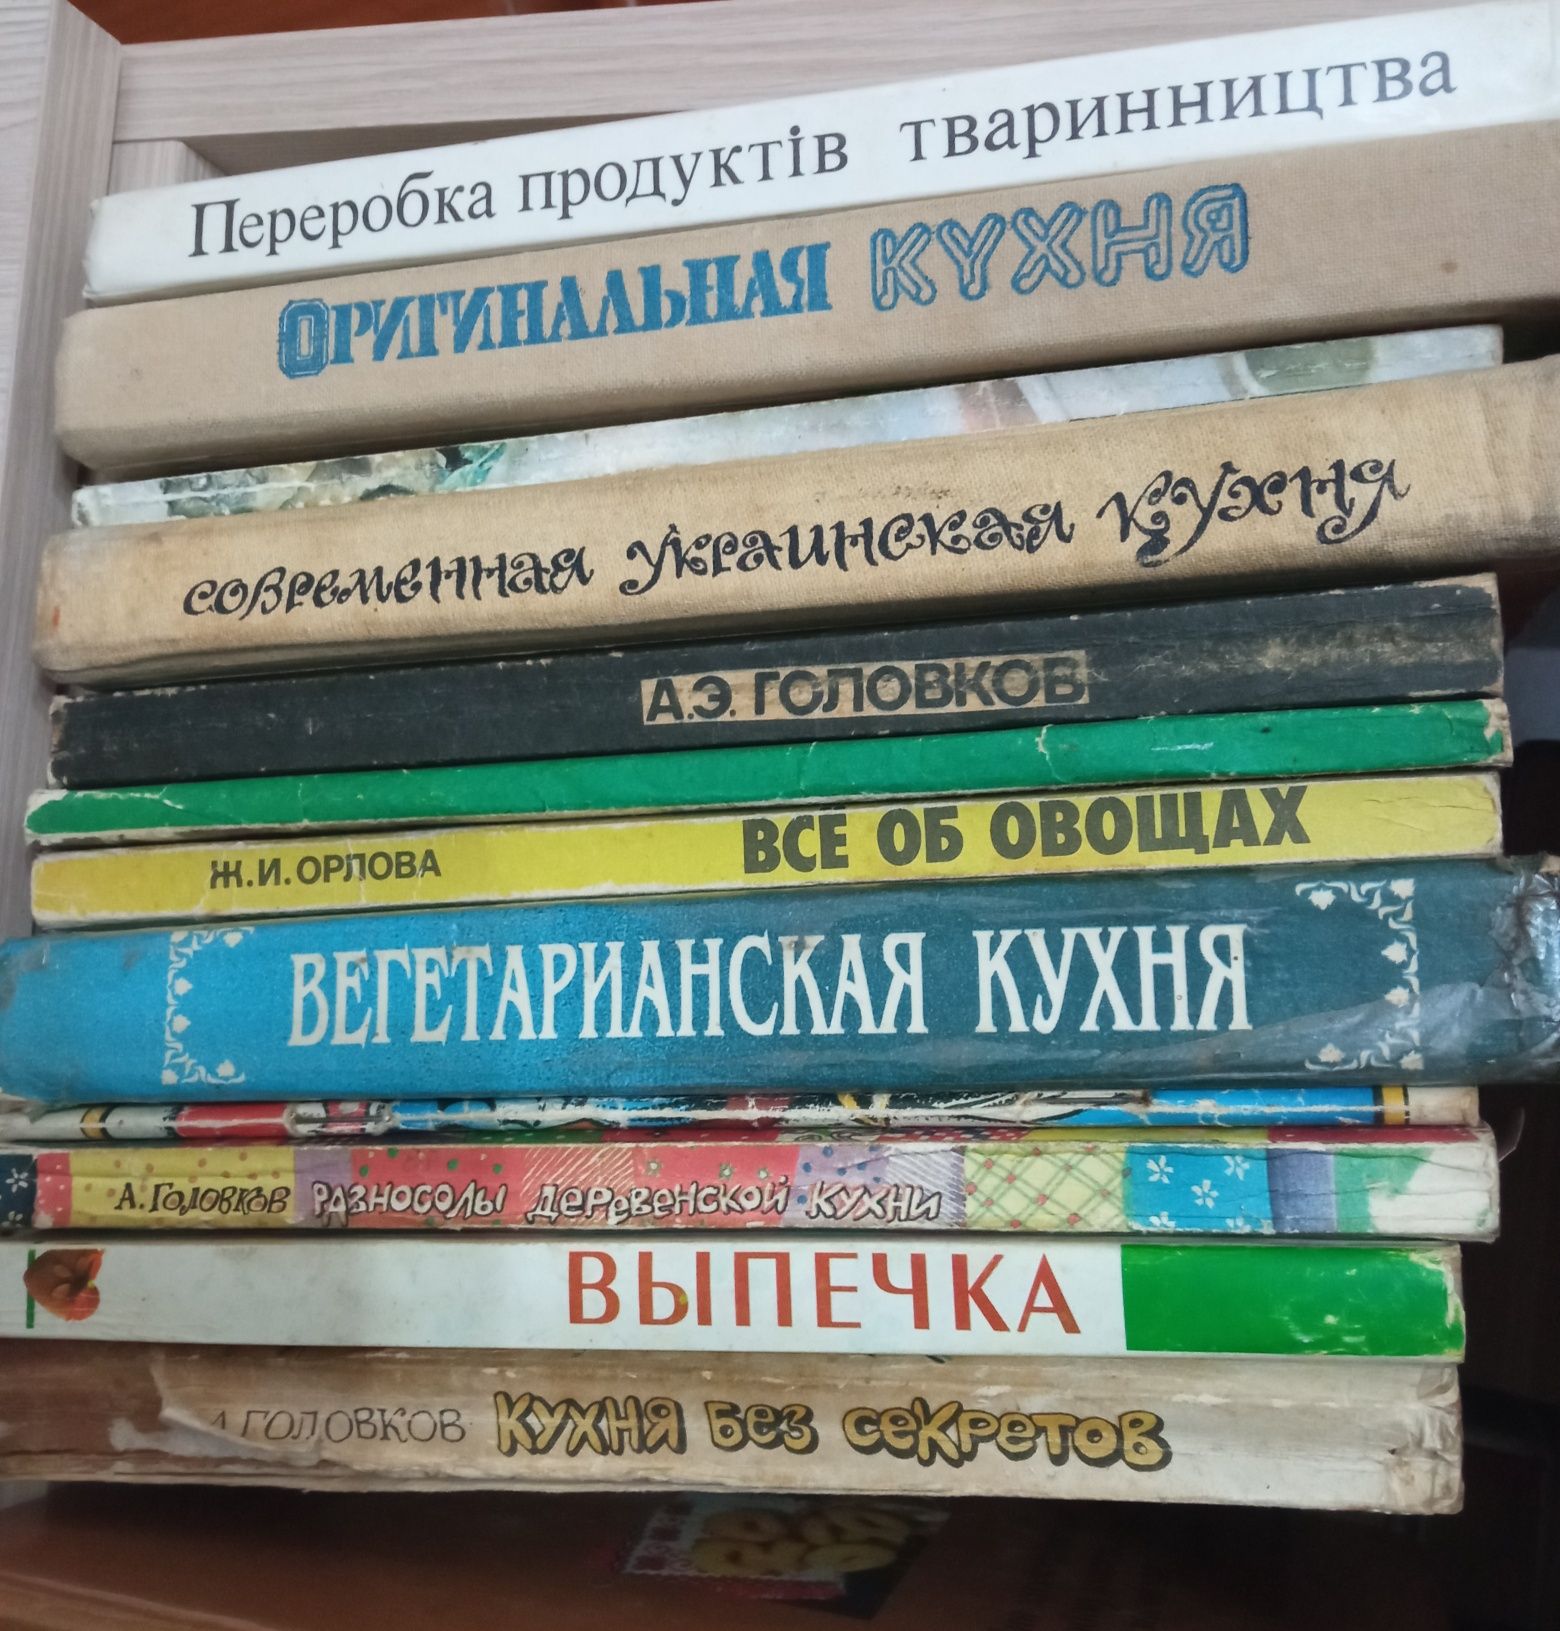 Много книг.   Книги. Книги.